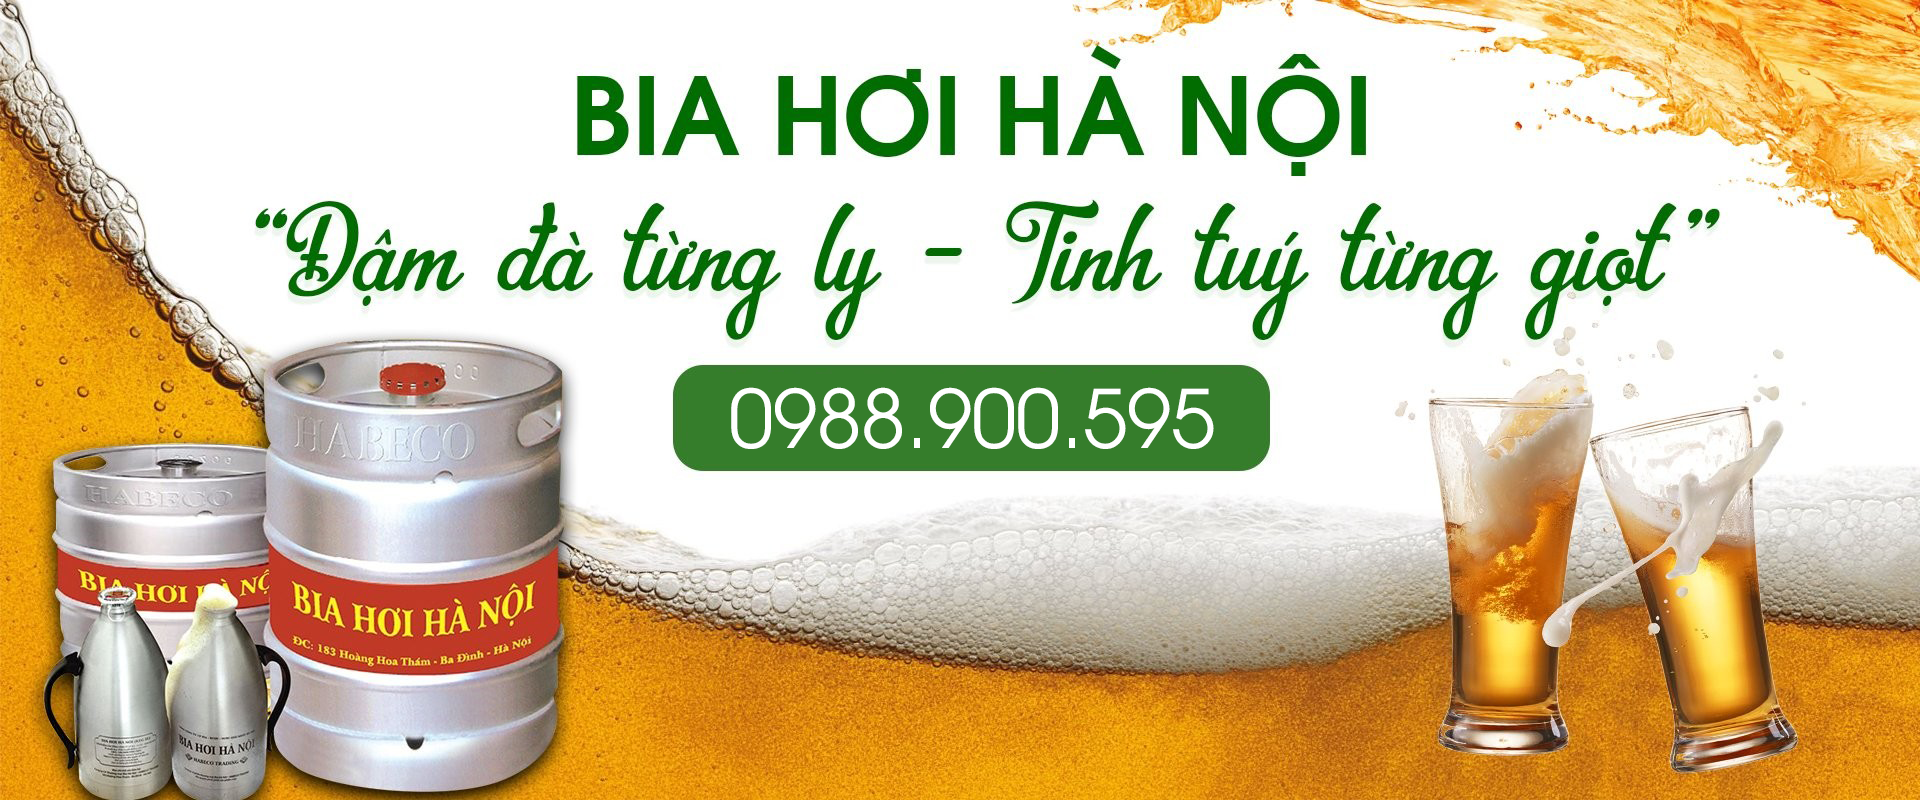 Bia hơi Hà Nội Keg 50L mua ở đâu rẻ nhất?